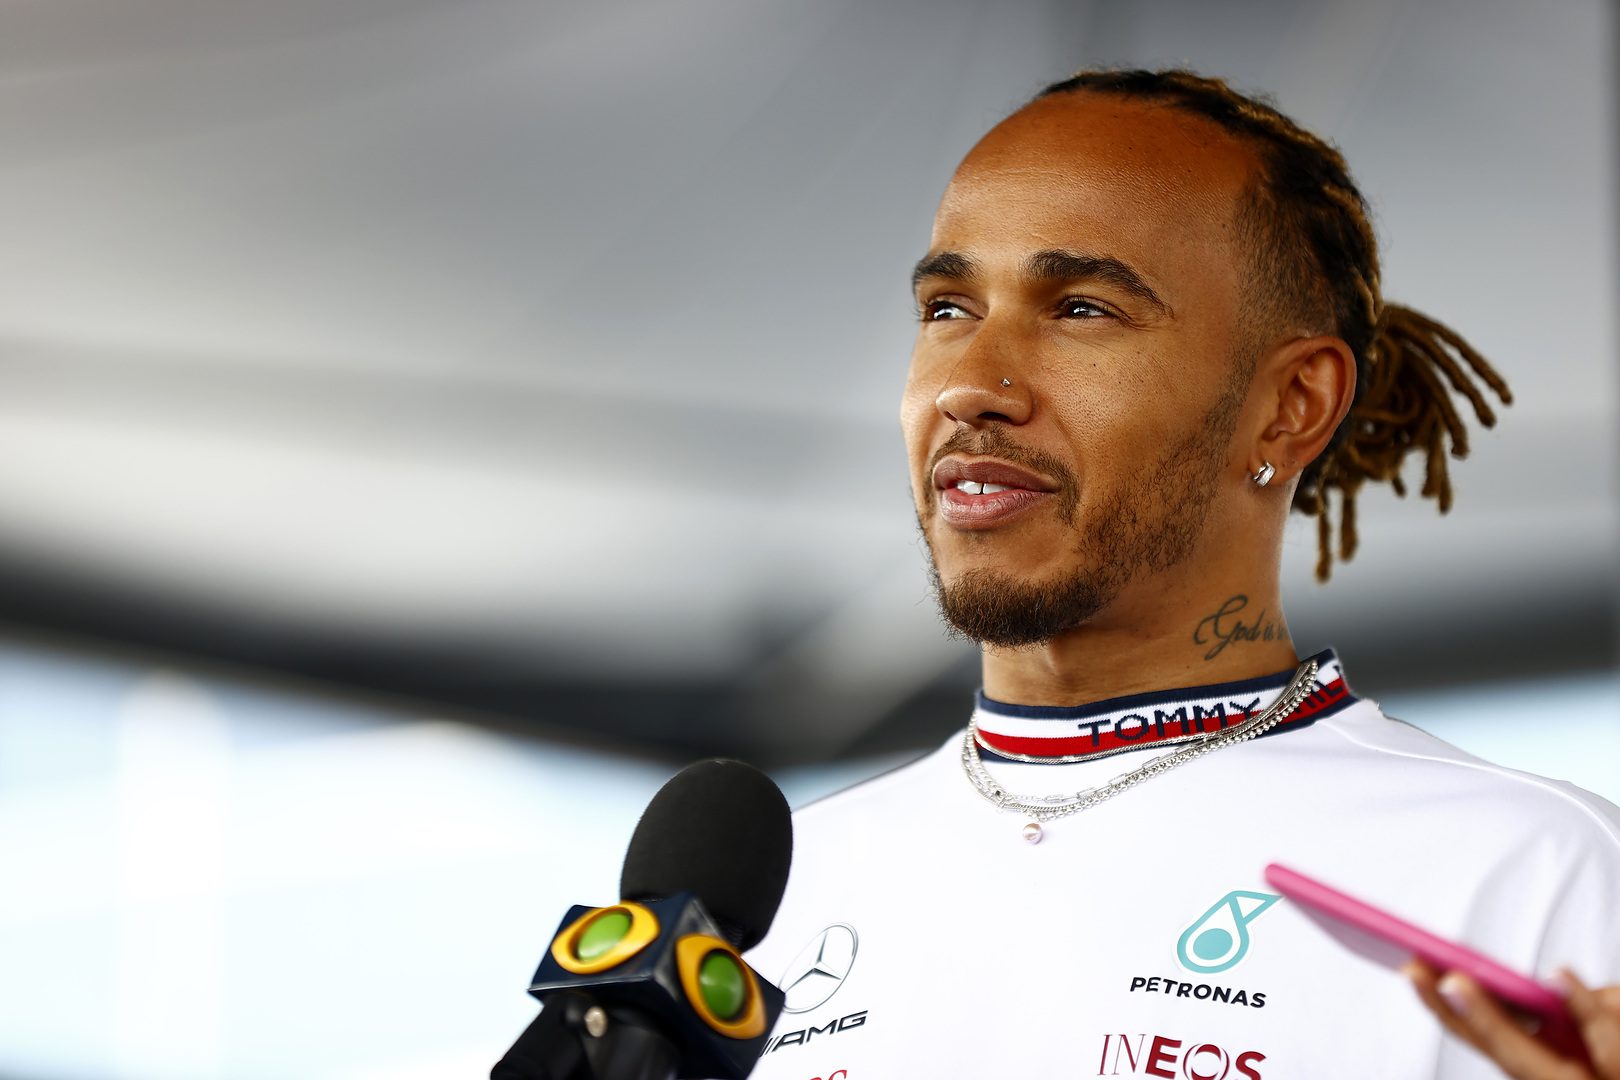 F1 - Lewis Hamilton réagit aux propos racistes de Piquet